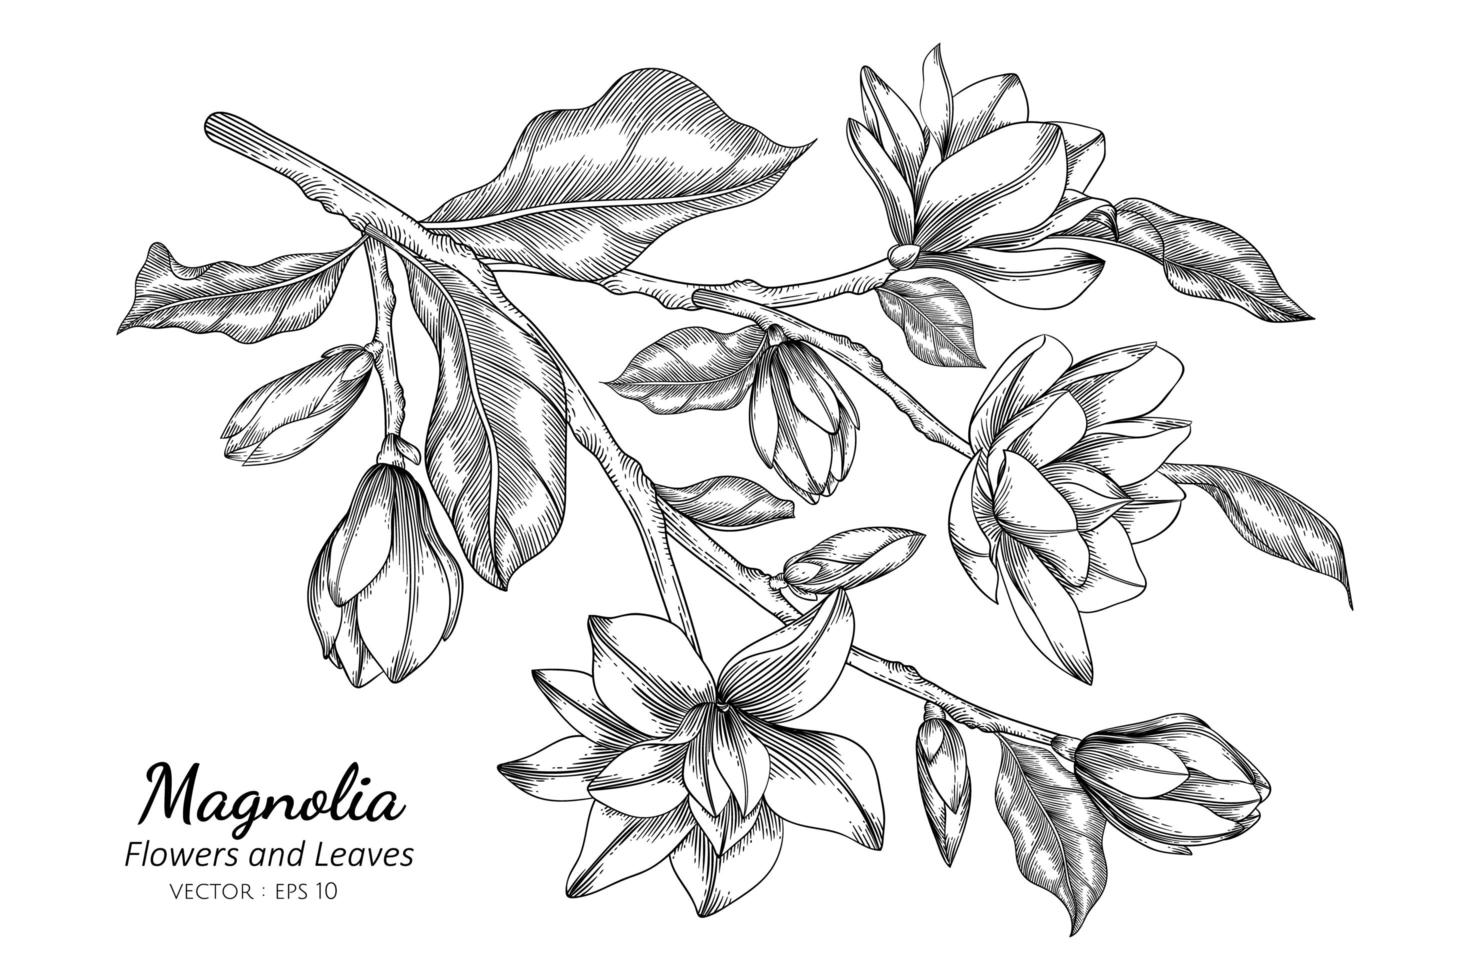 magnoliabloem en bladtekeningillustratie met lijntekeningen op witte achtergronden vector